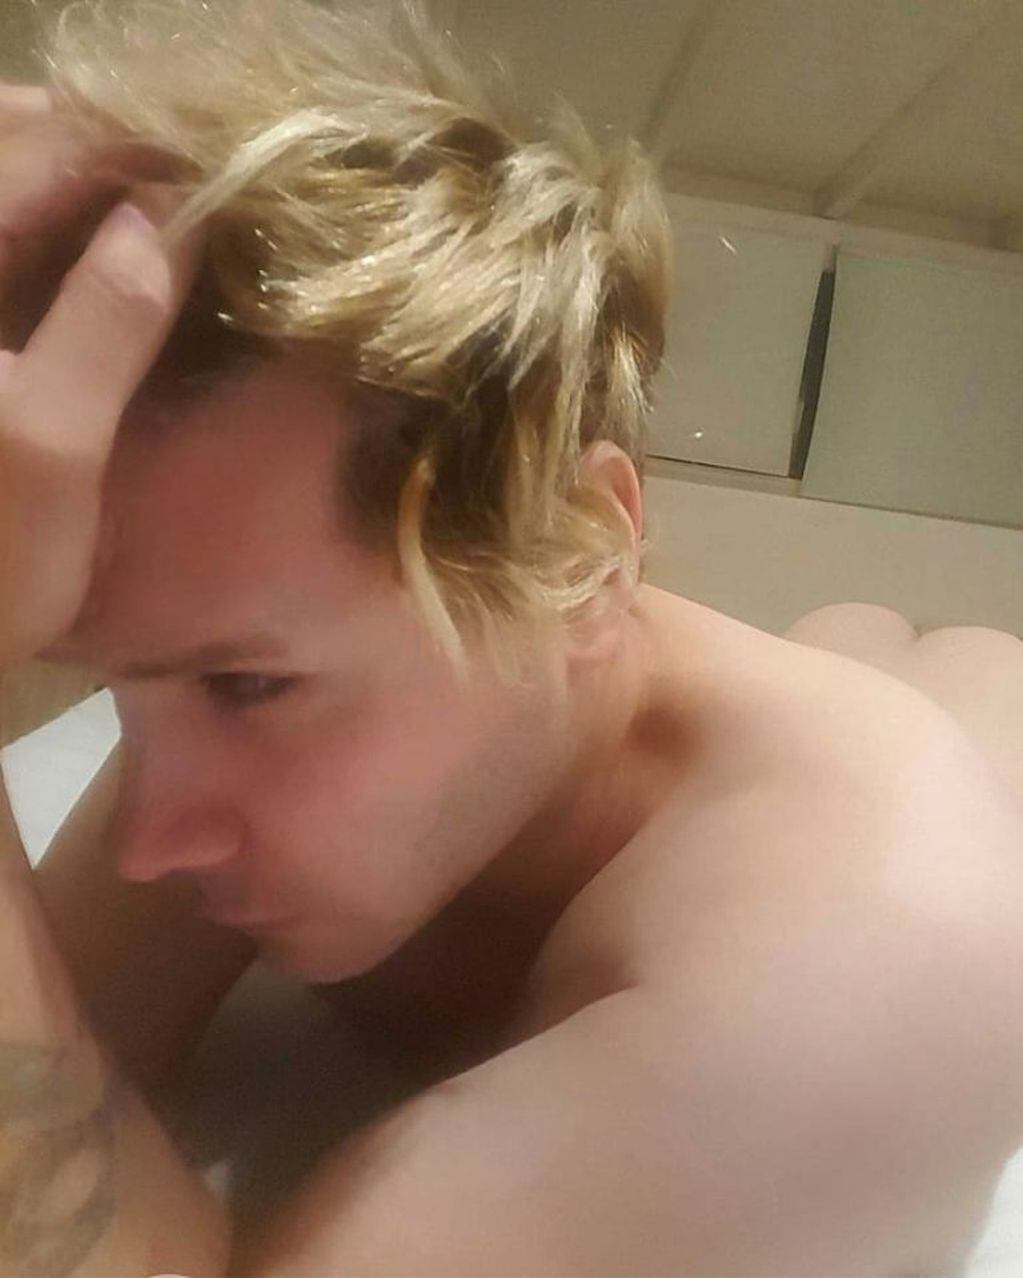 Tomasito Süller desafío la censura de Instagram con dos fotos totalmente desnudo (Instagram @elgrantomasito)